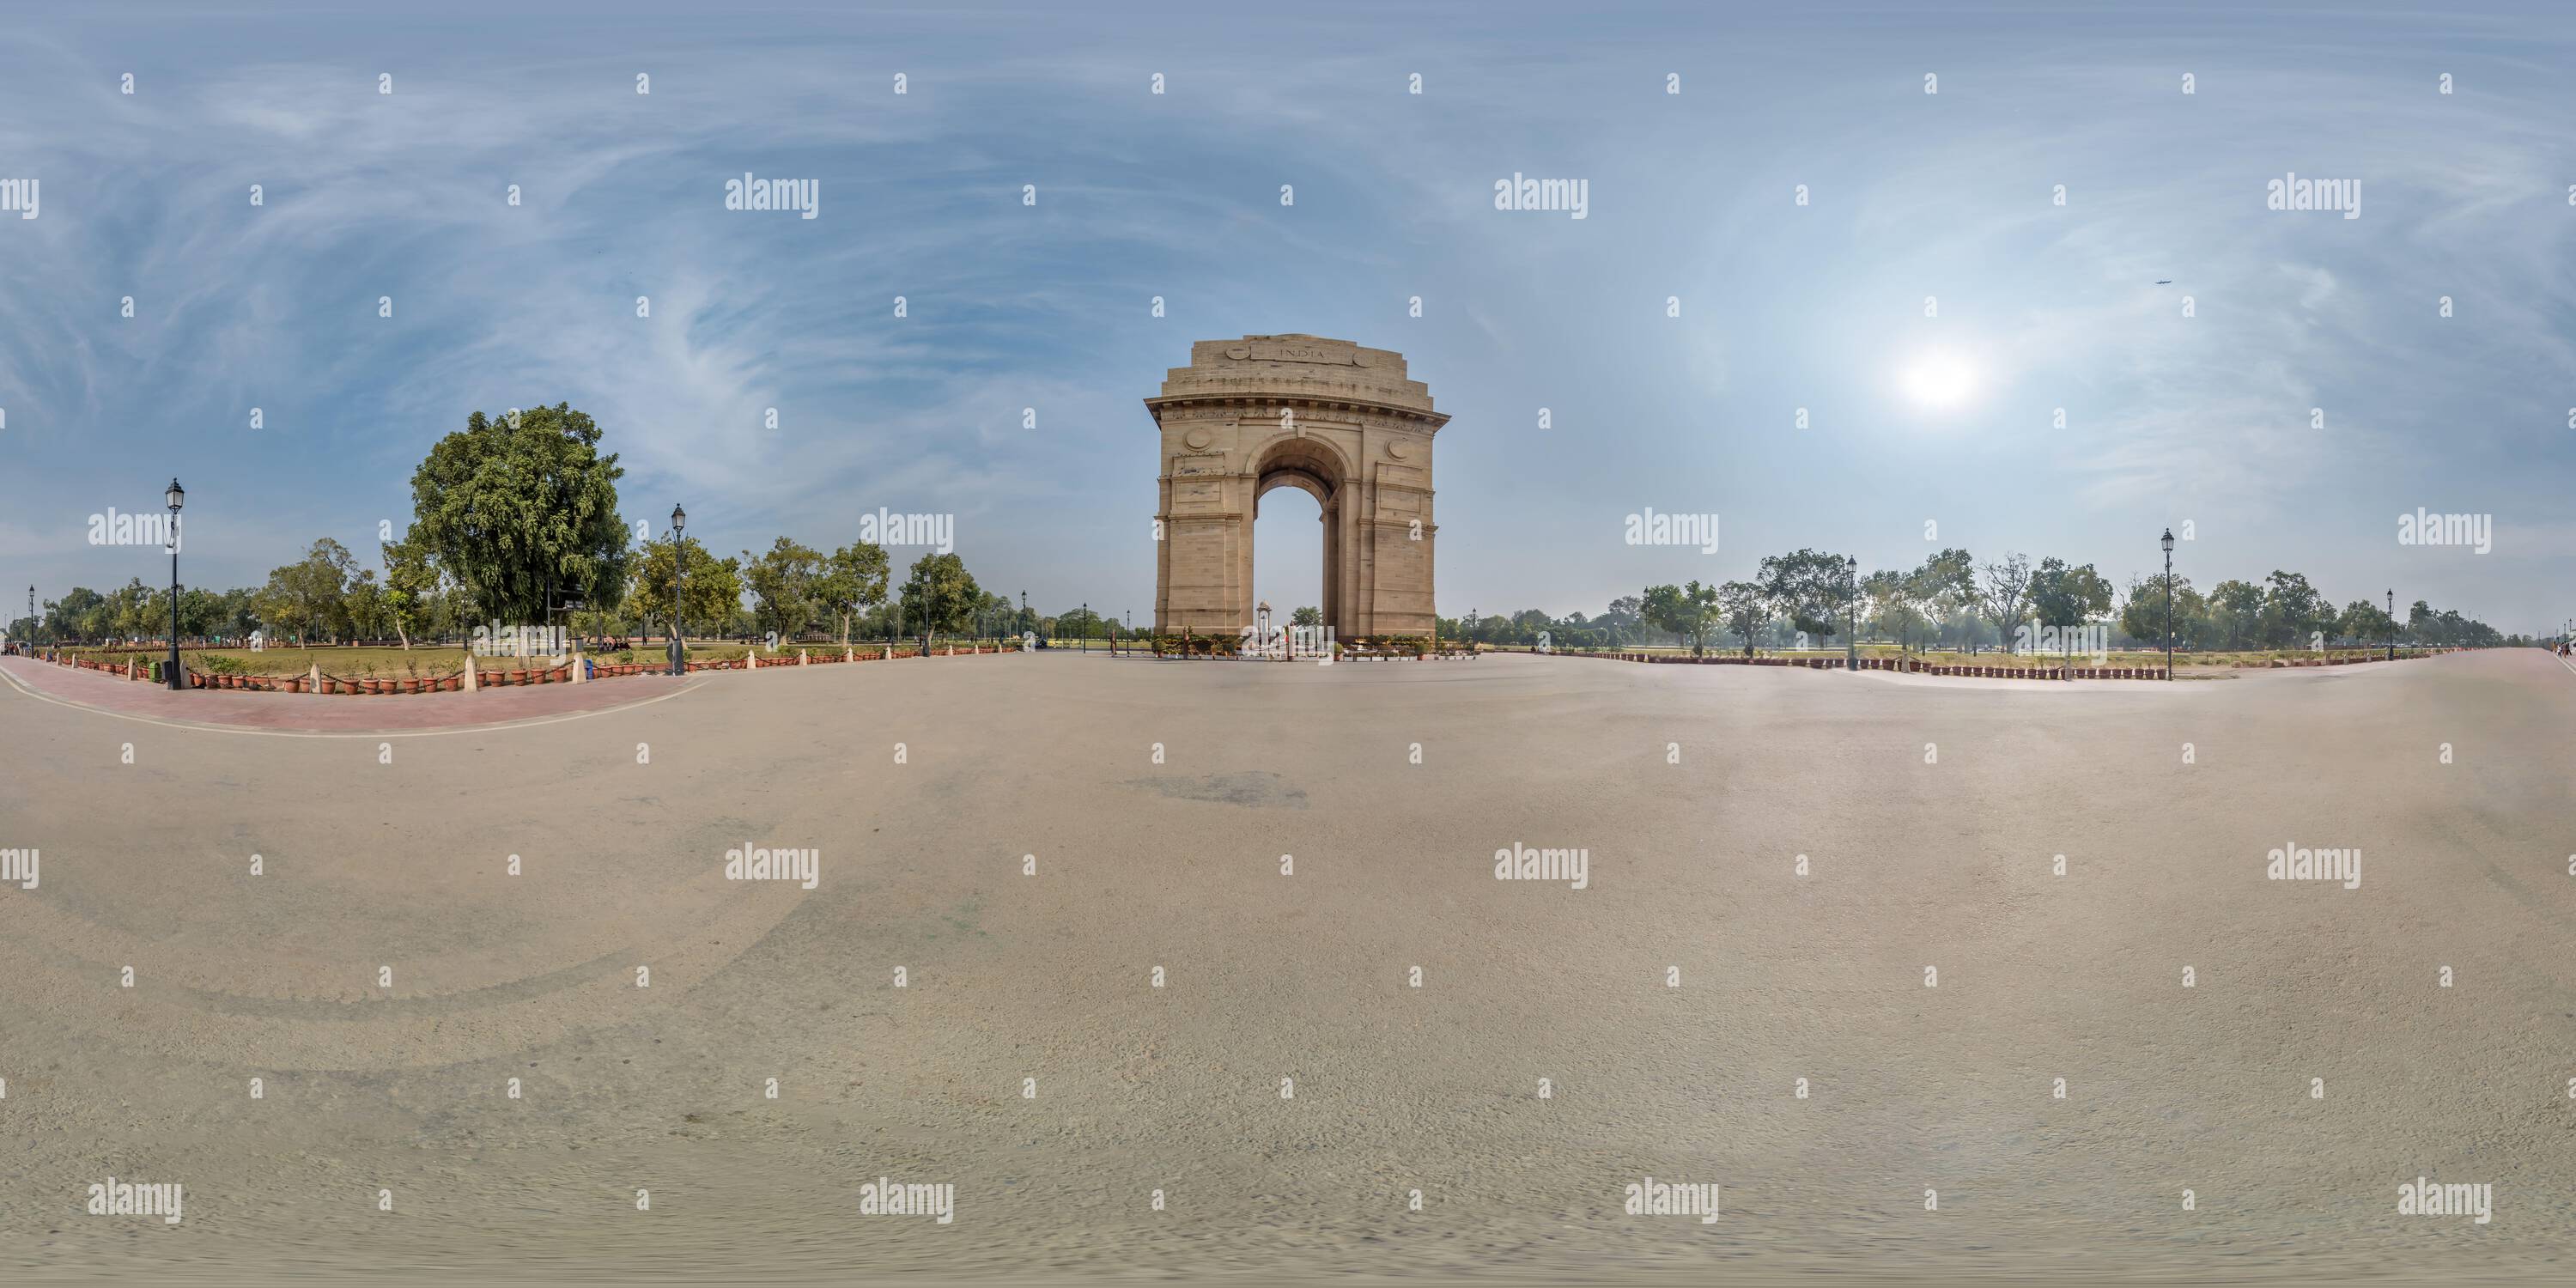 Vue panoramique à 360° de Plein panorama sphérique hdri 360 sans couture près de la porte de l'Inde, mémorial de guerre à Delhi sans personnes et touristes en projection équirectangulaire avec zen